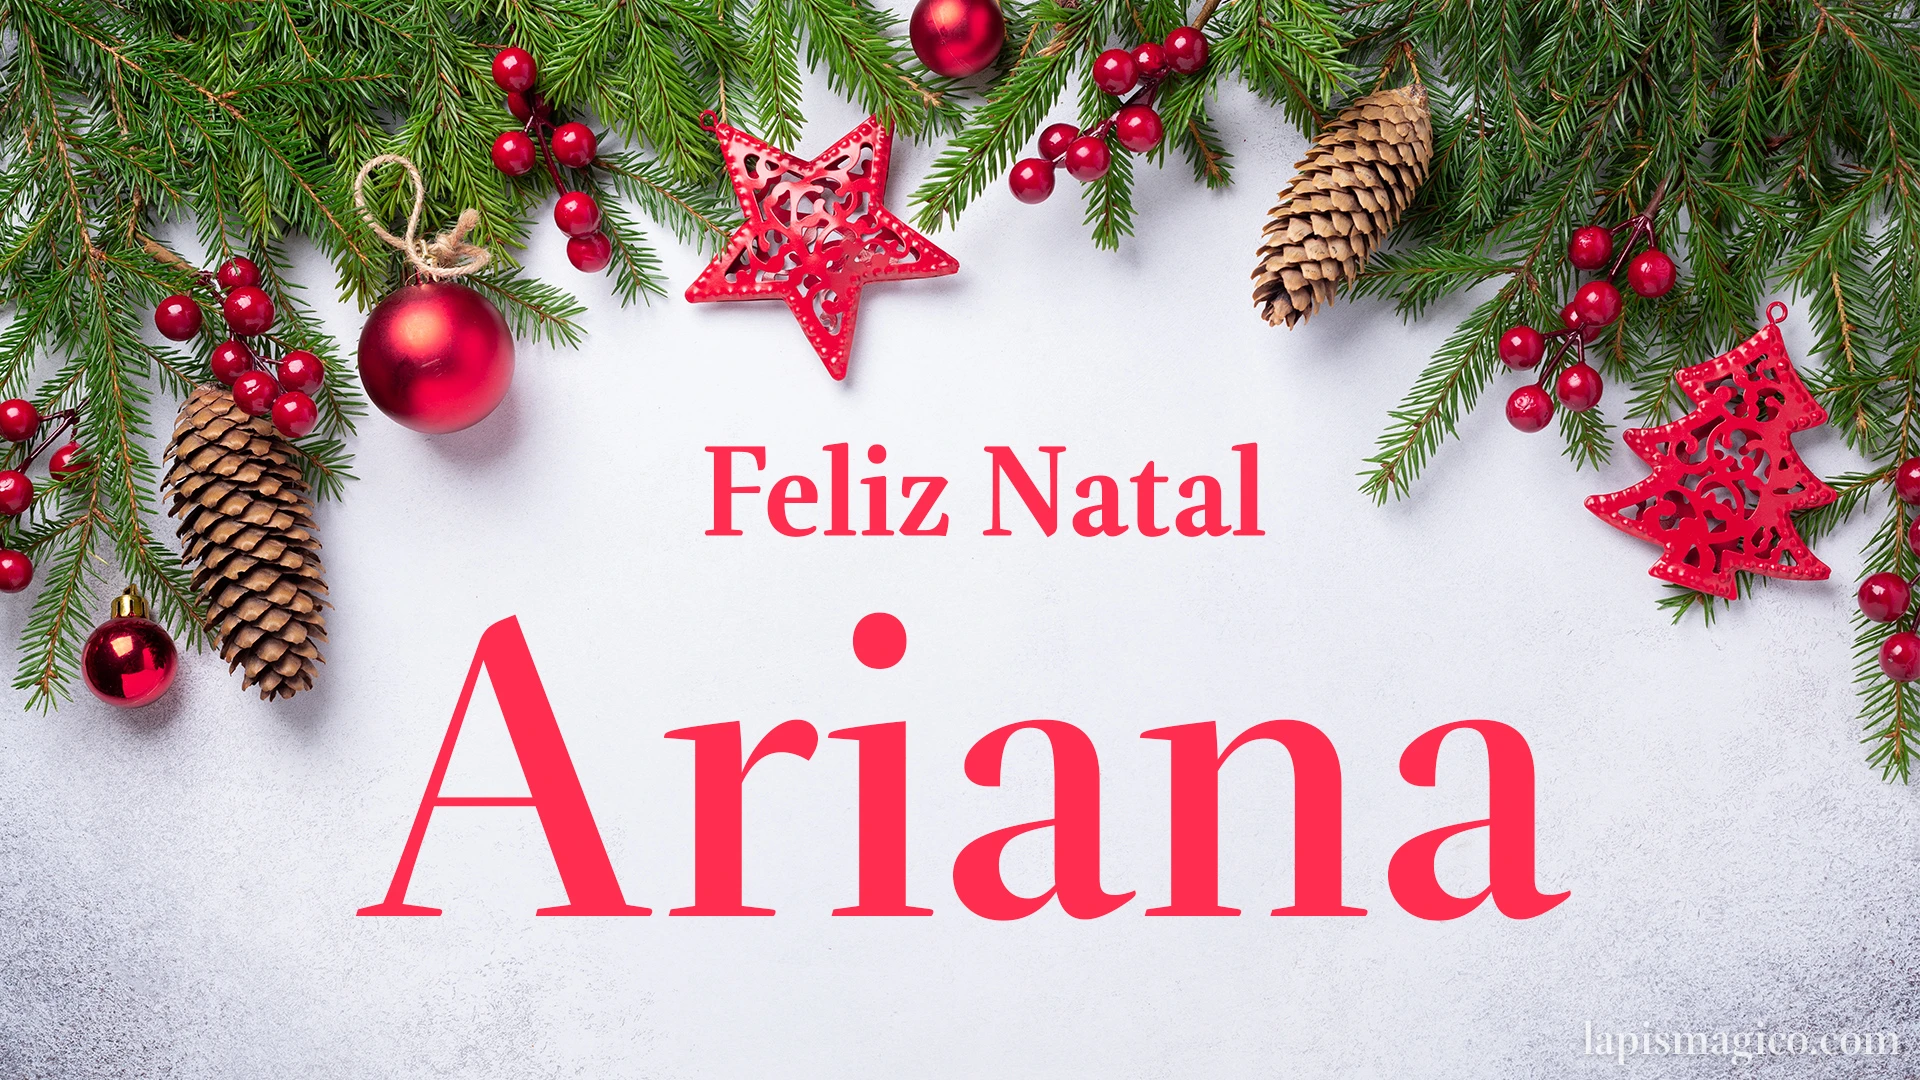 Oh Ariana, cinco postais de Feliz Natal Postal com o teu nome